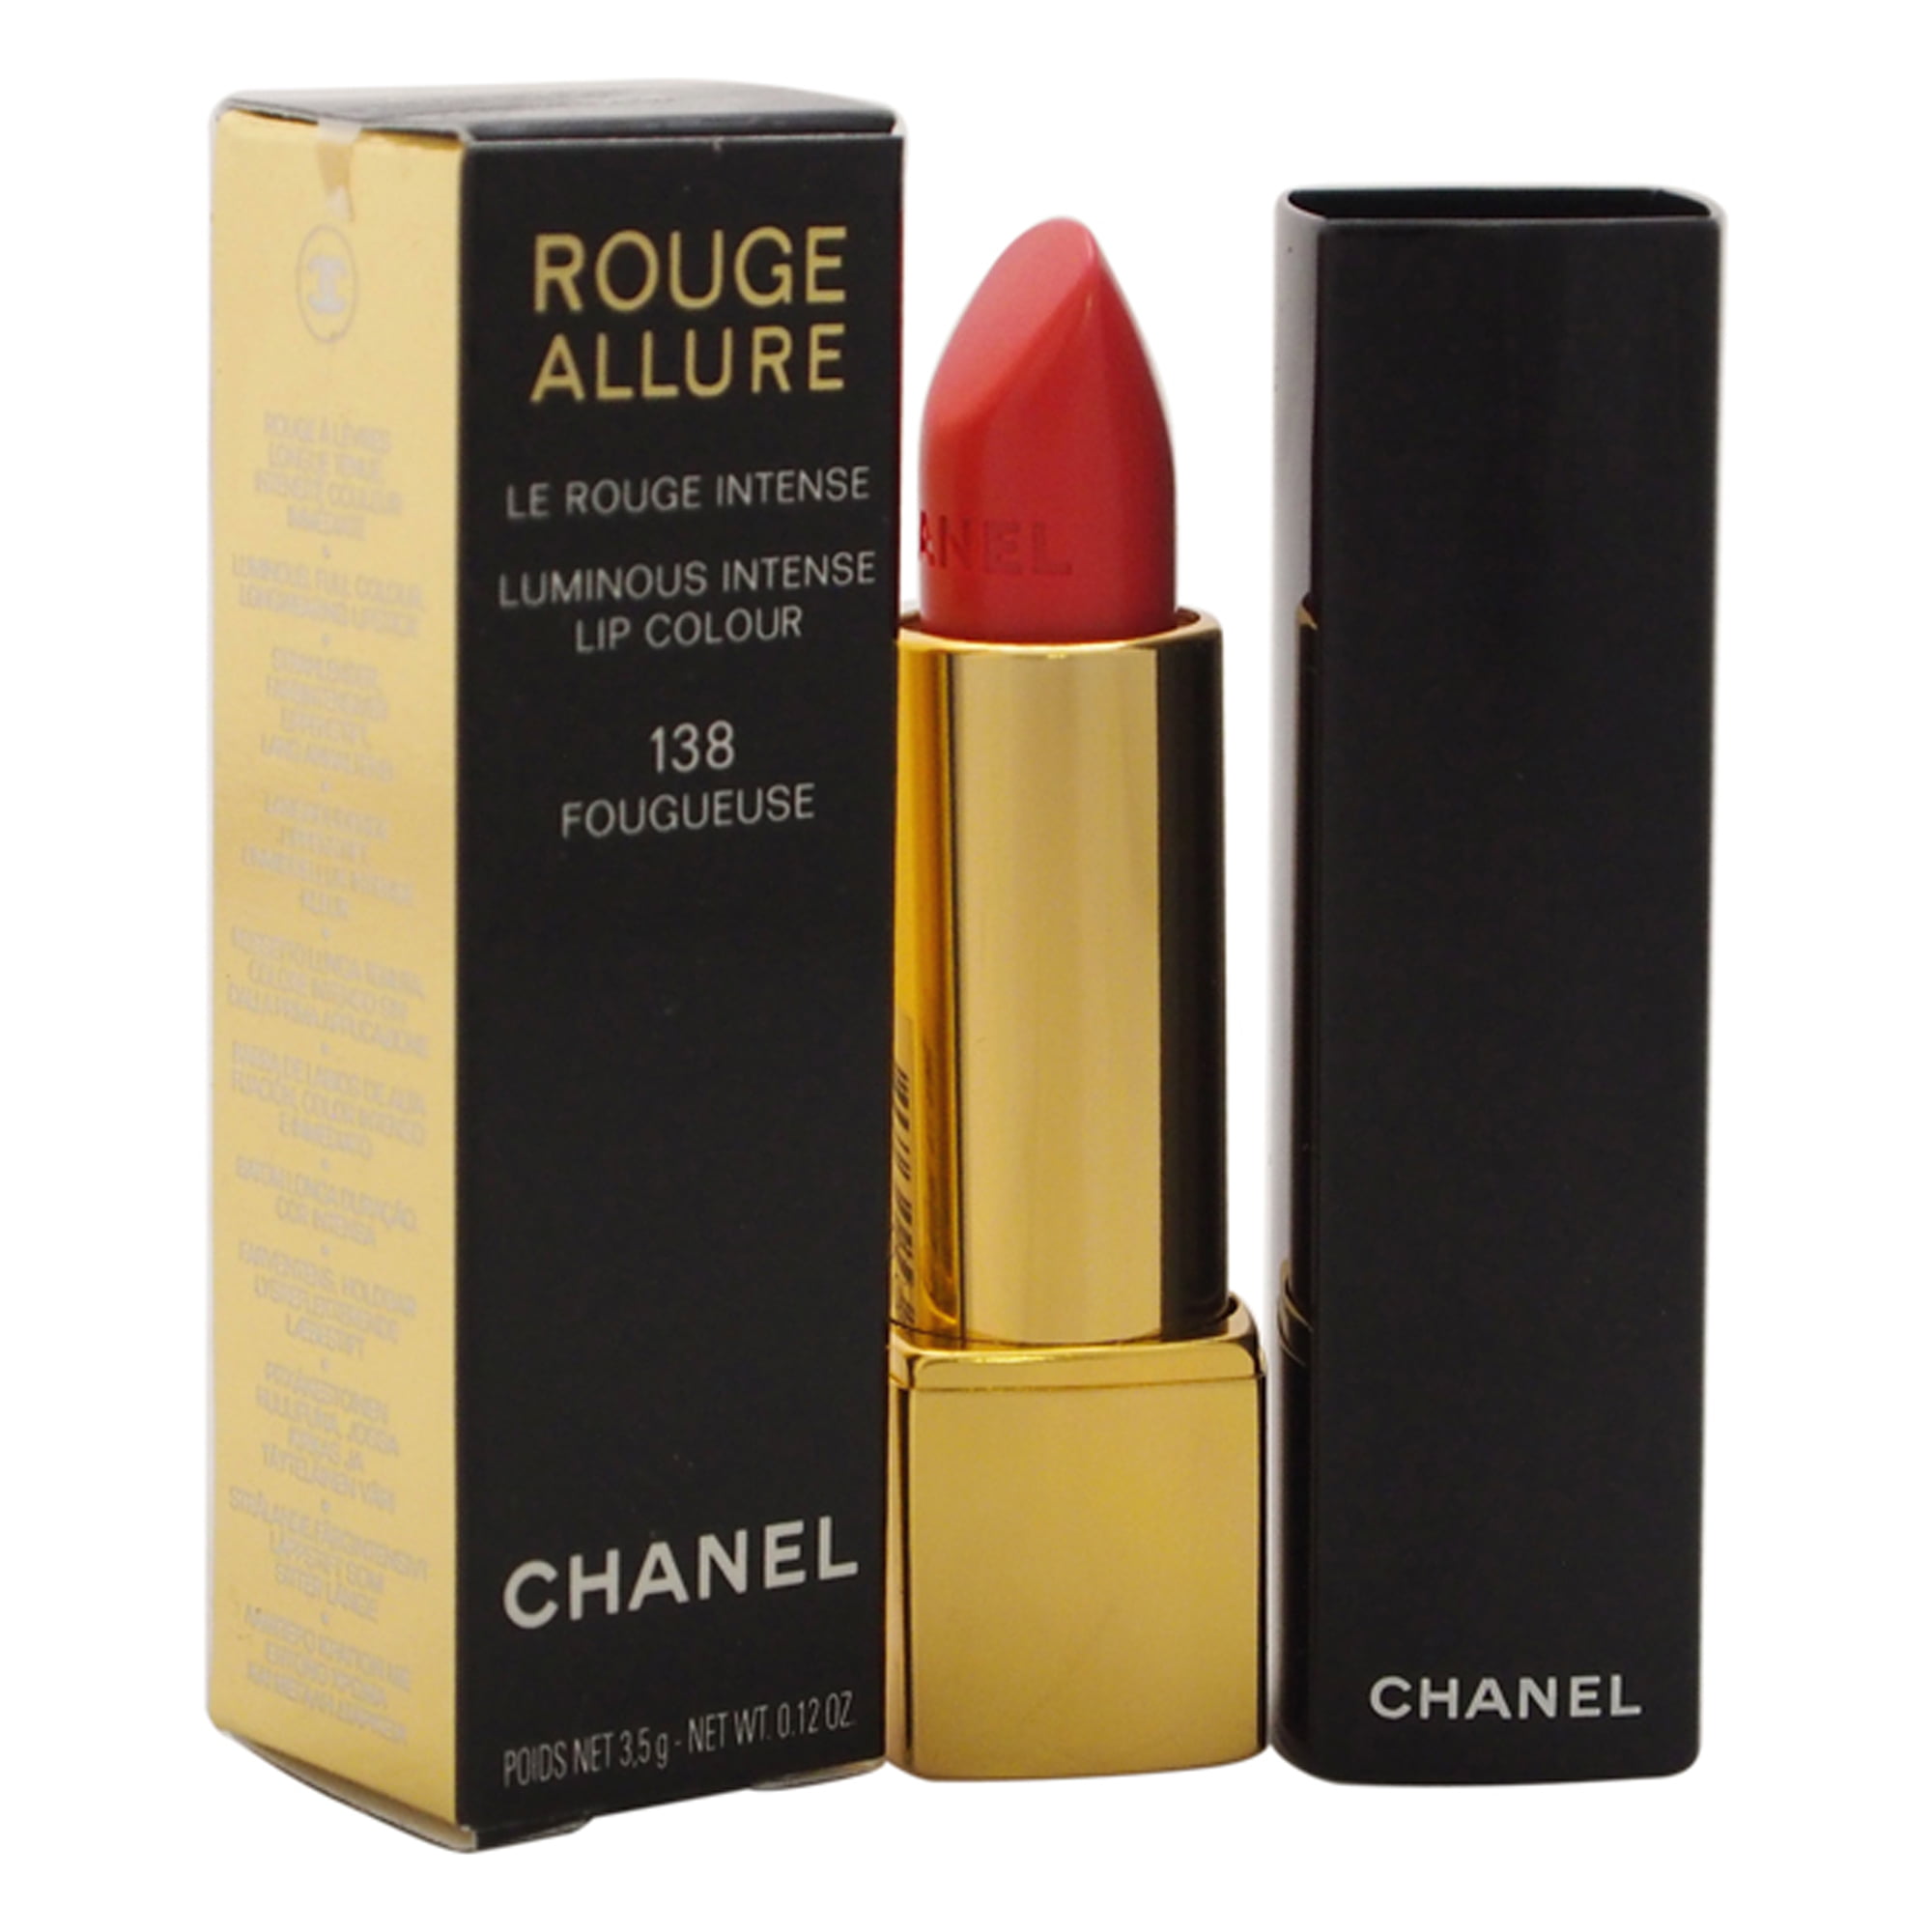 Chanel Rouge Allure Luminous Intense Lip Colour, # 138 Fougueuse, 0.12 Oz